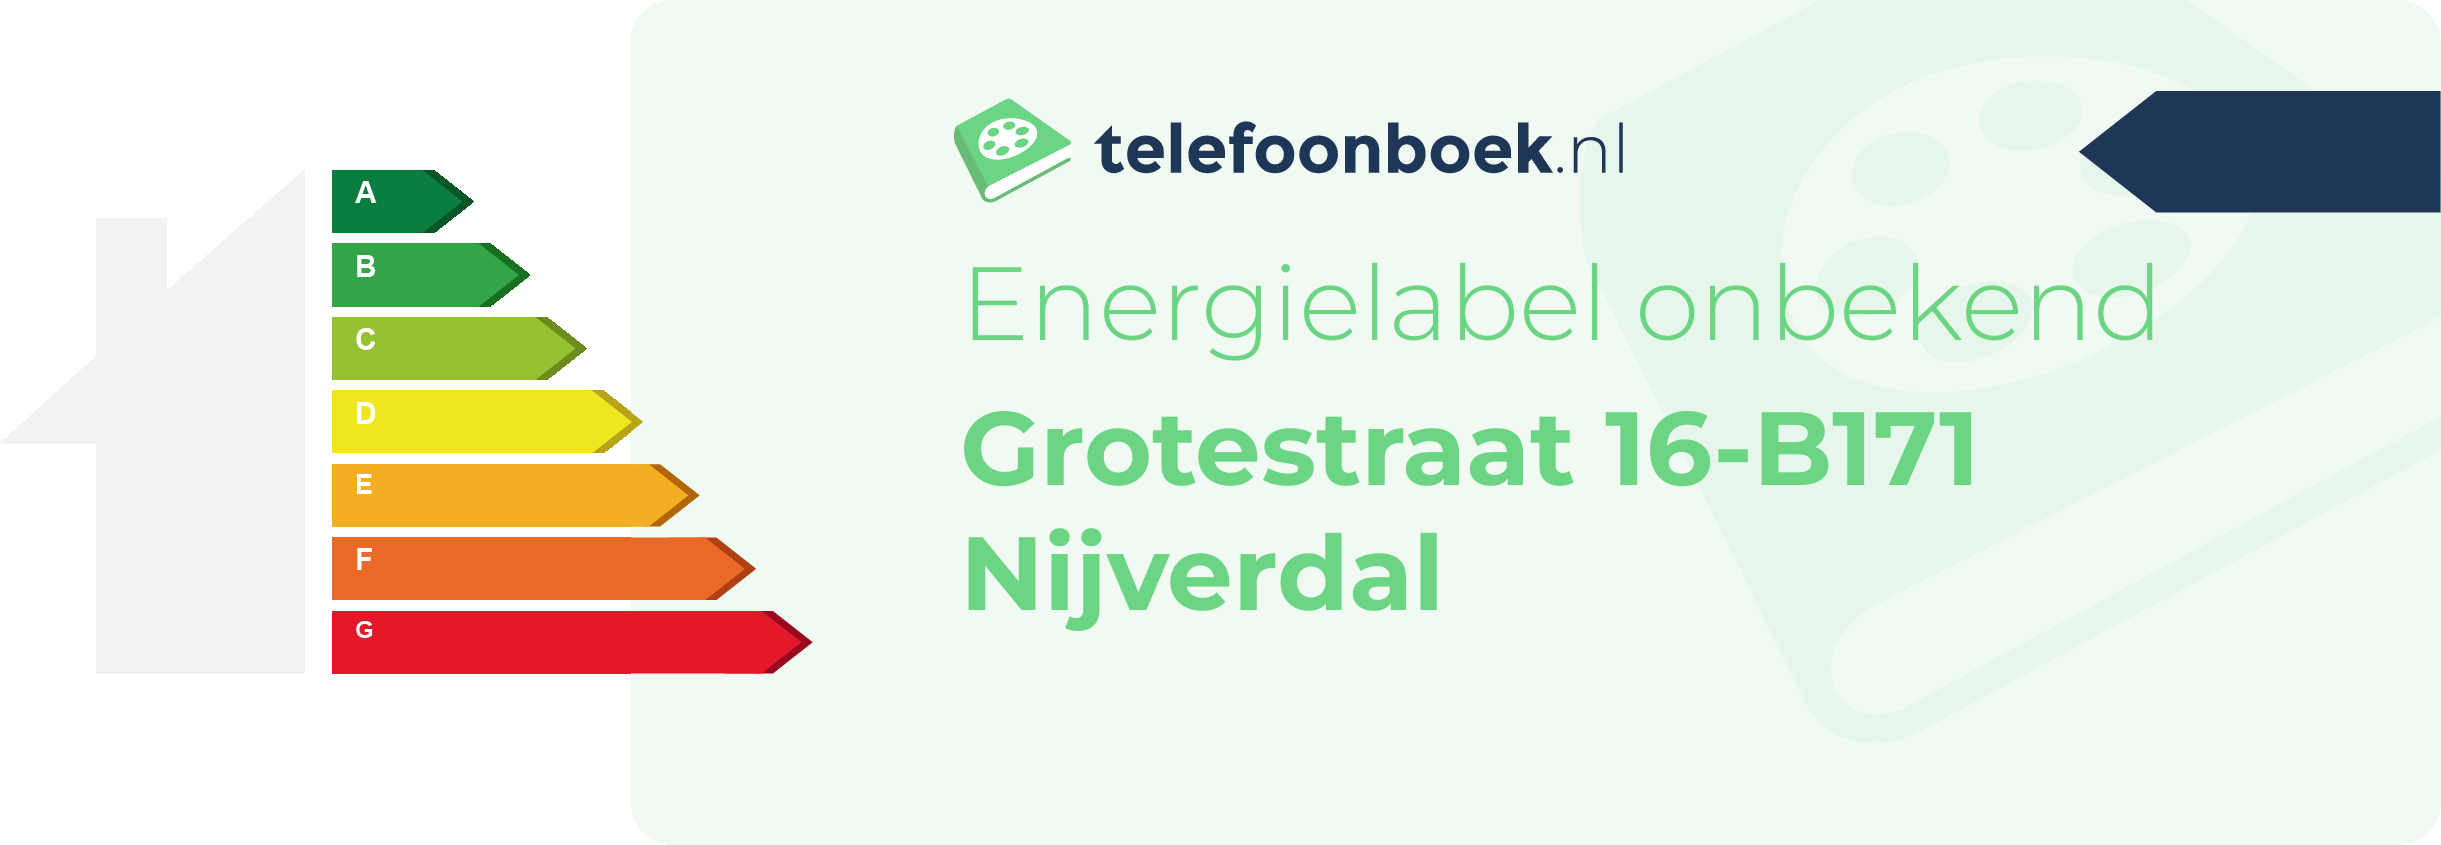 Energielabel Grotestraat 16-B171 Nijverdal